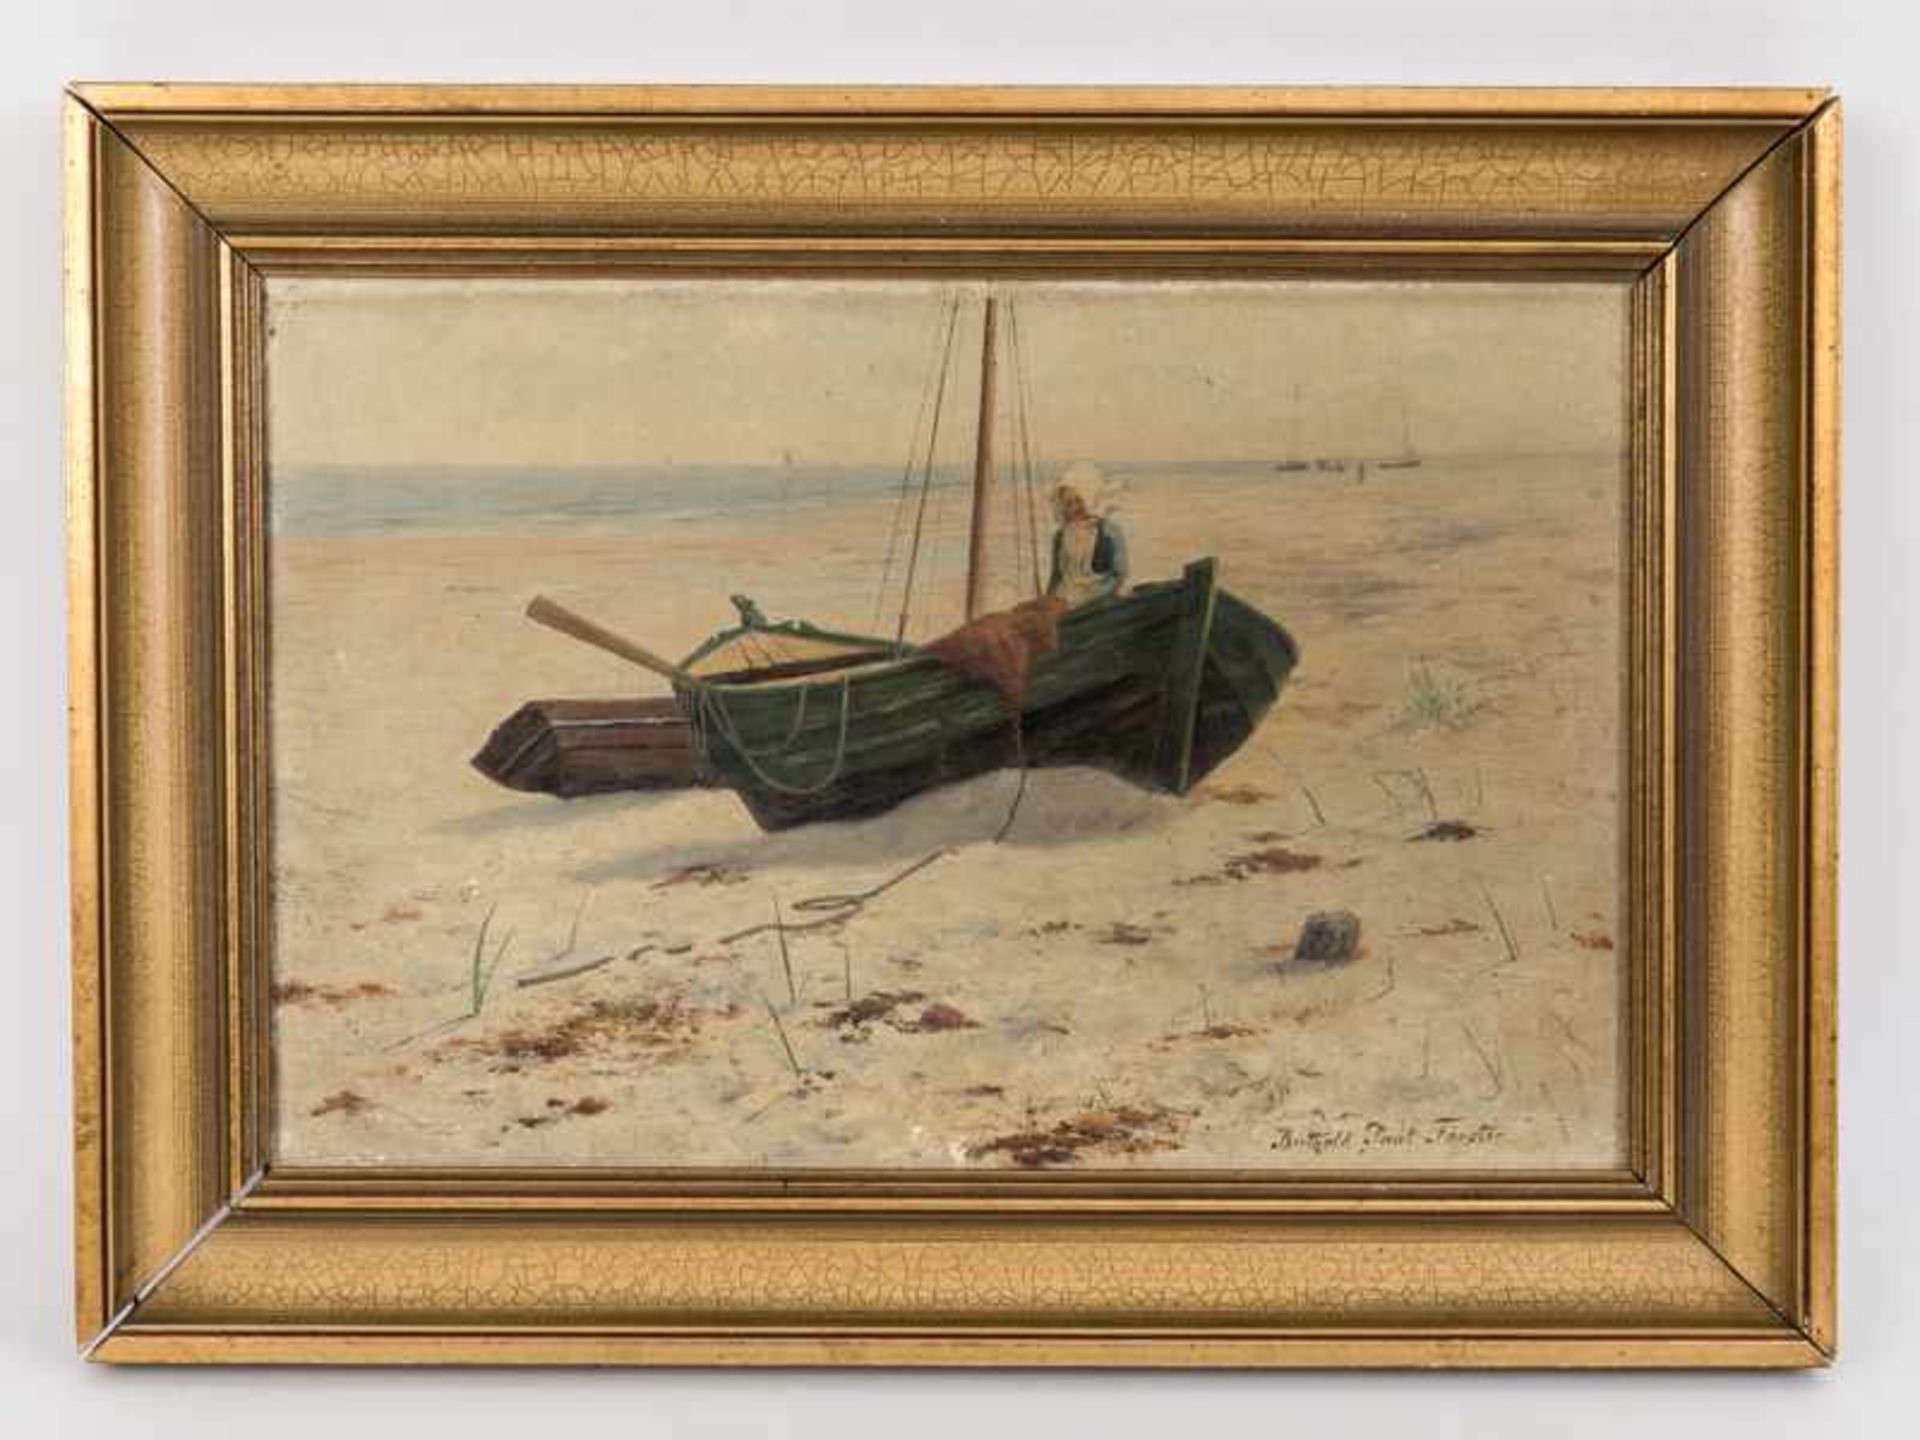 Förster, Berthold Paul (1851 - 1925). Öl auf Leinwand; "Strandszene mit angelandeten Fischerbooten